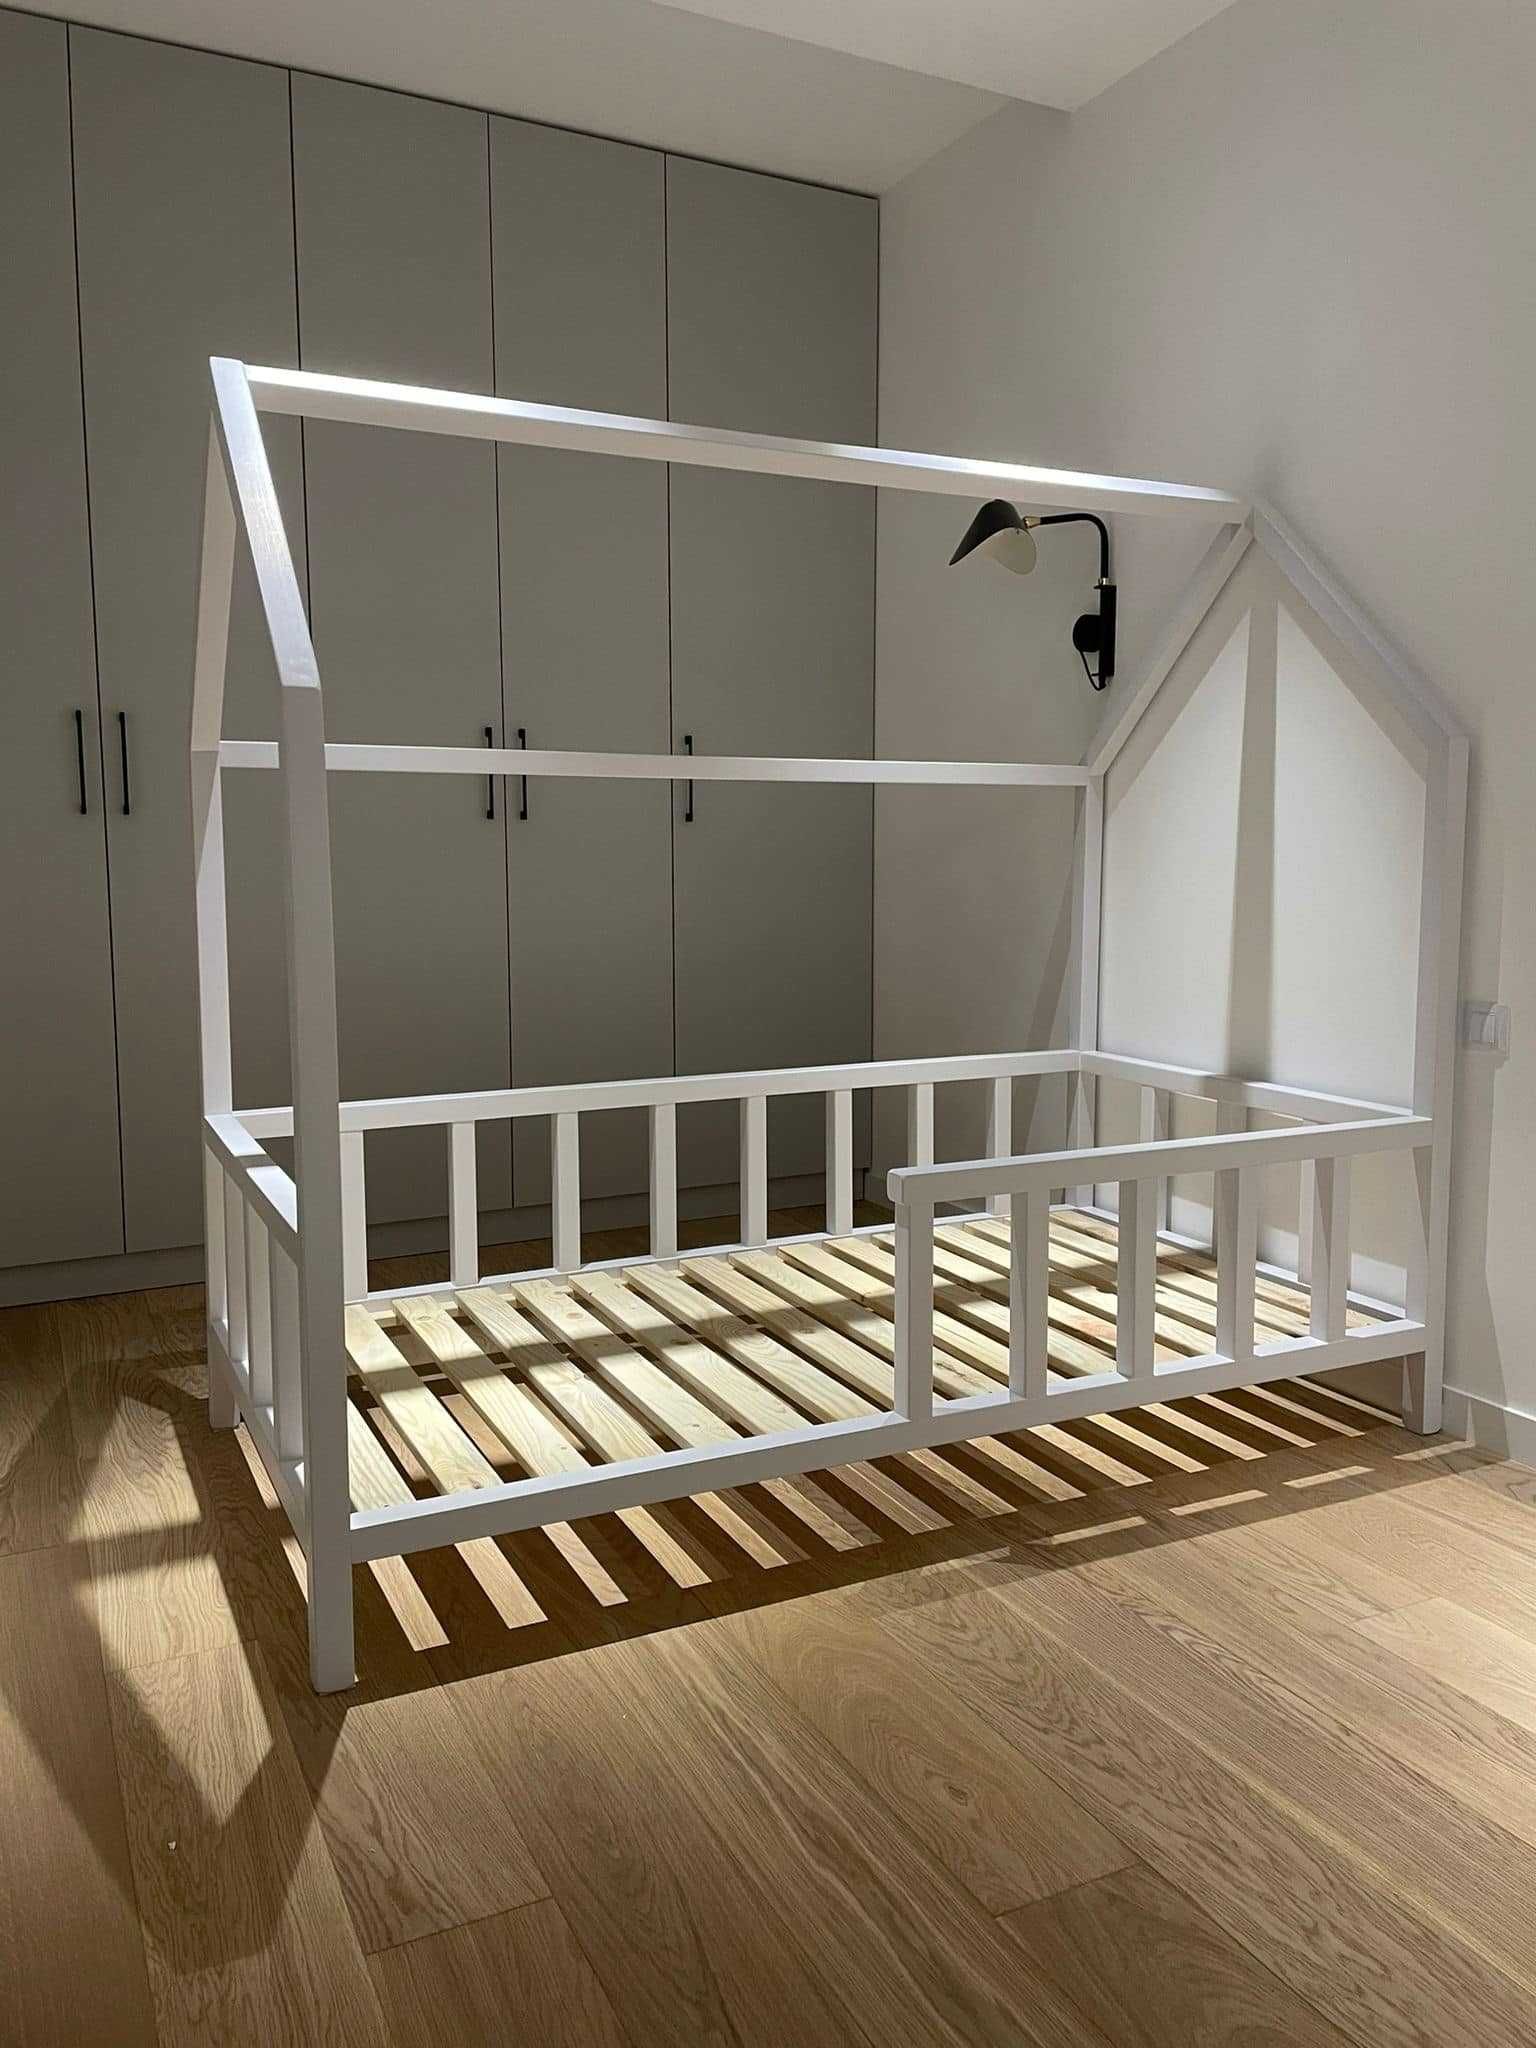 Łóżko w stylu skandynawskim łóżko domek łóżko tipi